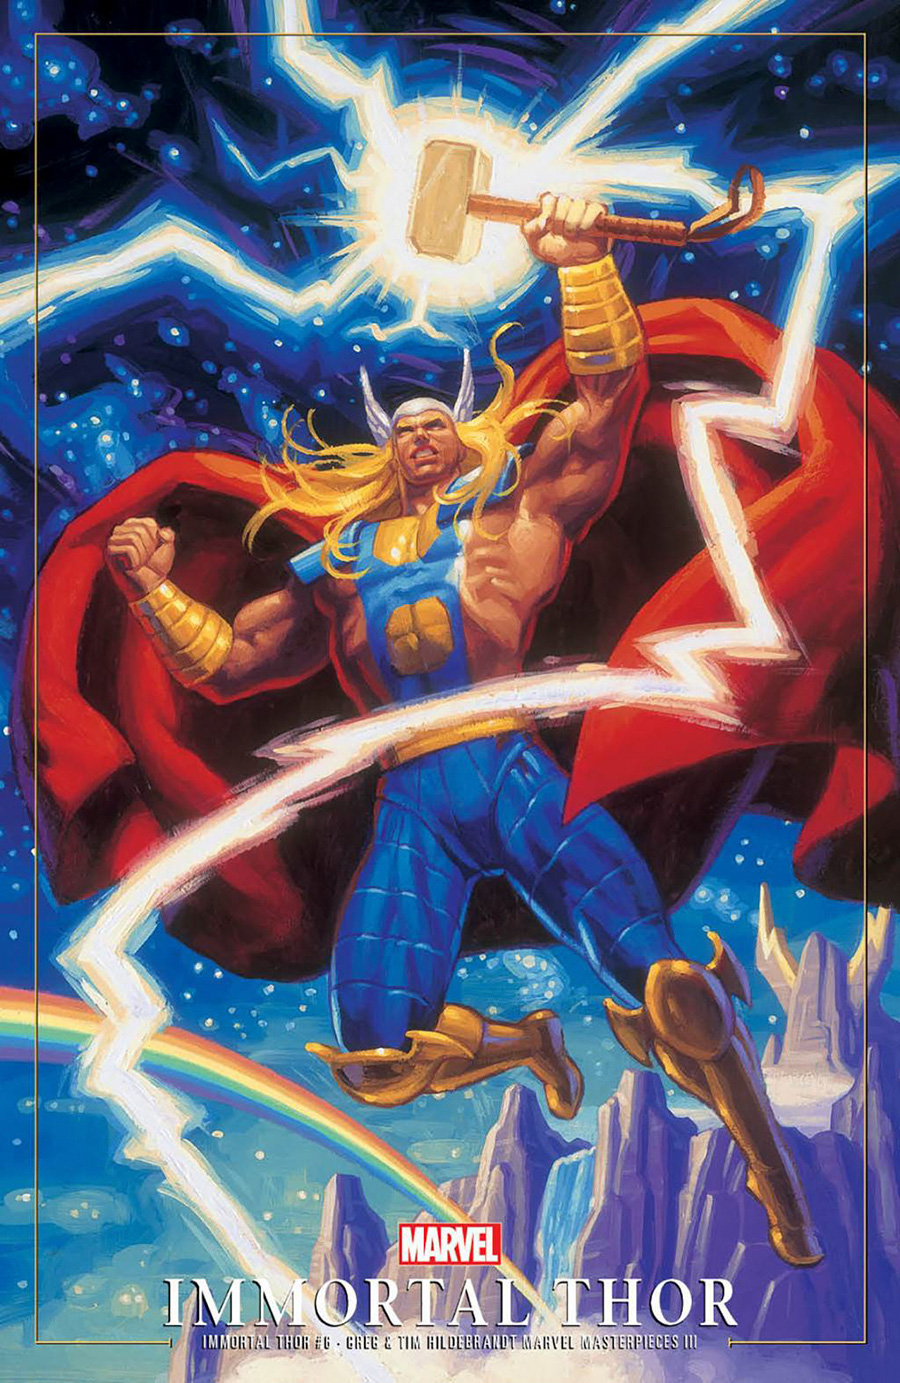 Immortal Thor #6 Cover C Variant Greg Hildebrandt & Tim Hildebrandt Marvel Masterpieces III Thor Cover